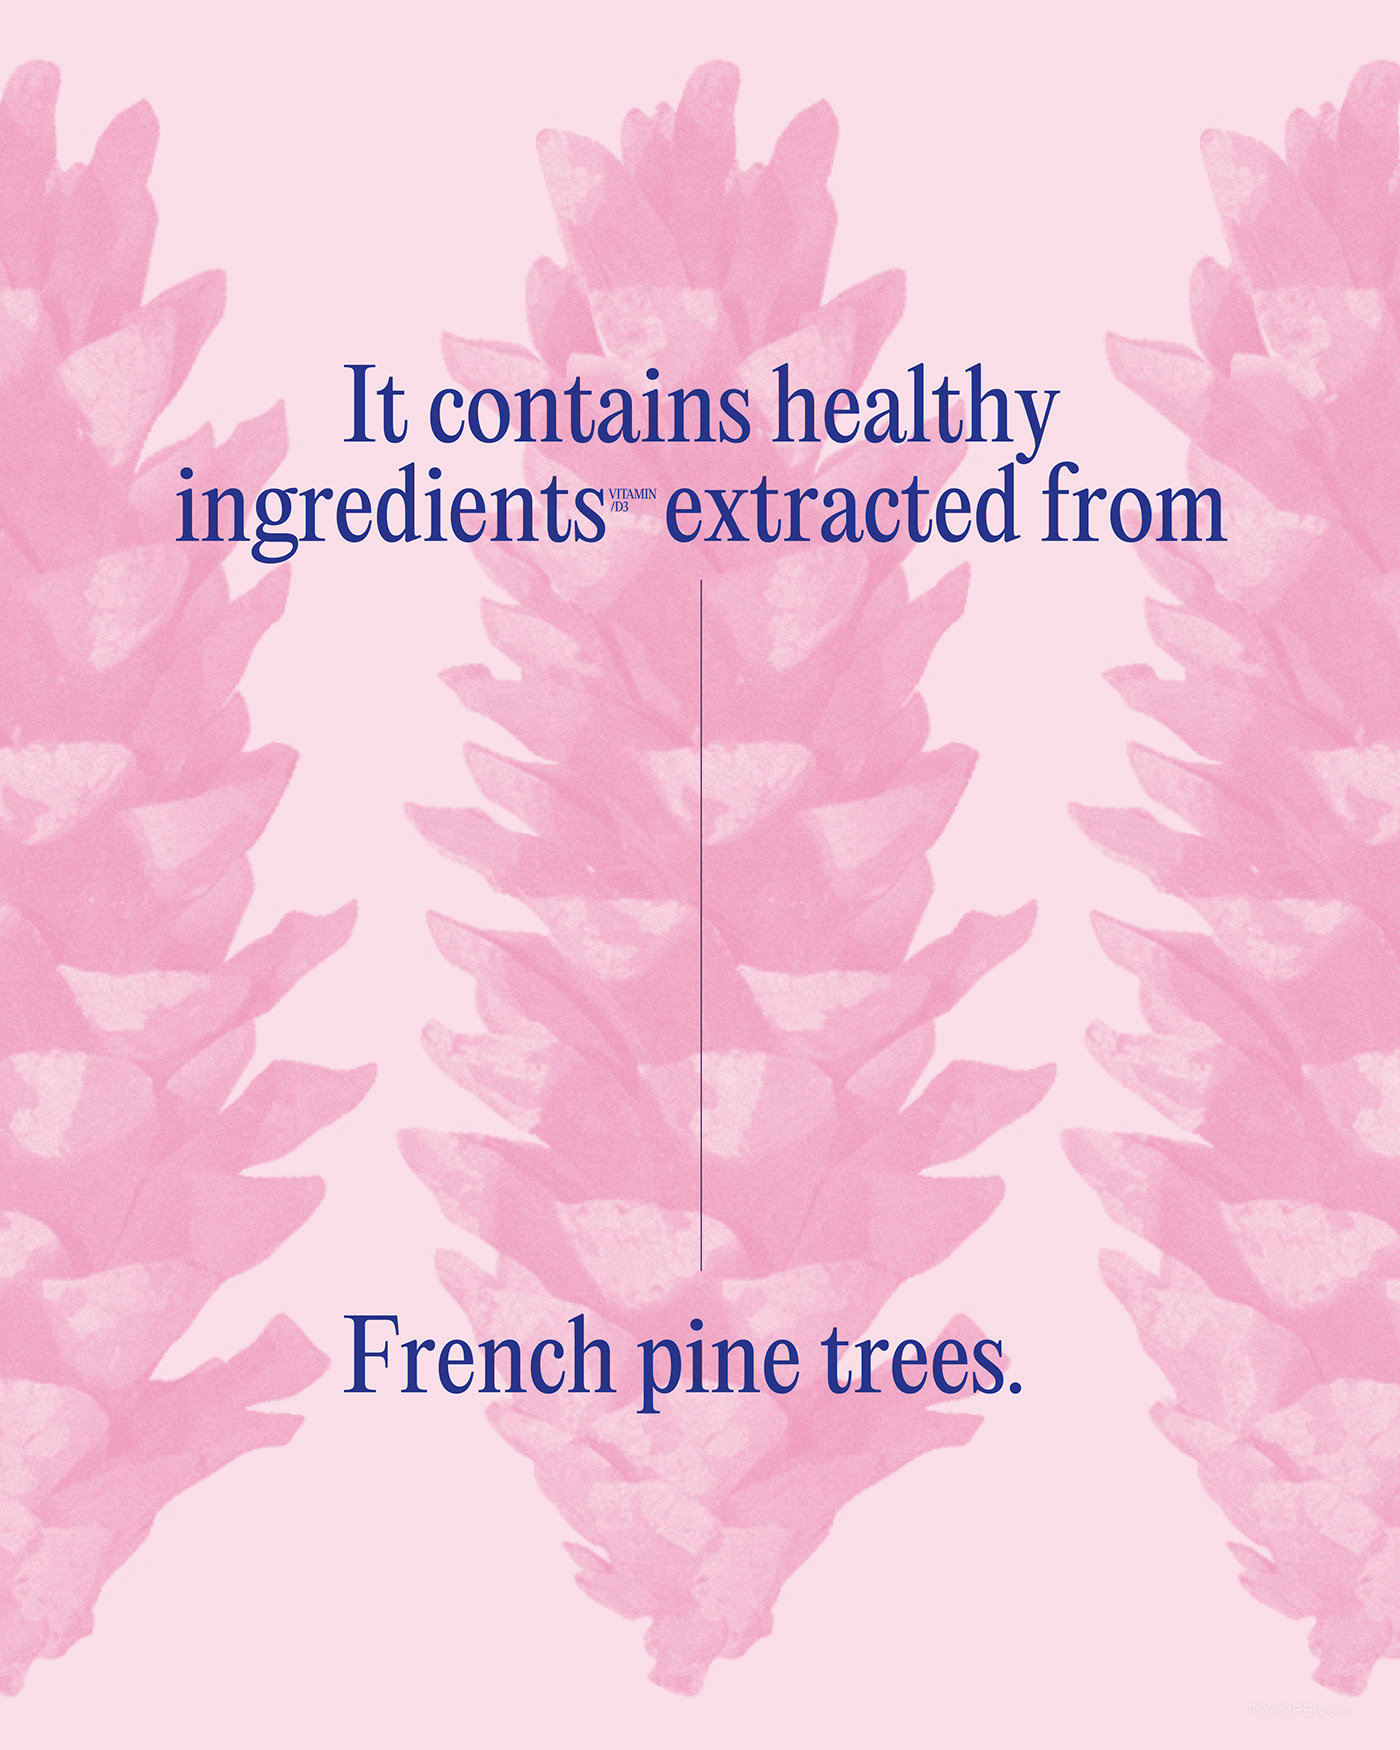 法国海岸松树皮提取物Pycno'gen保健品包装设计欣赏-03